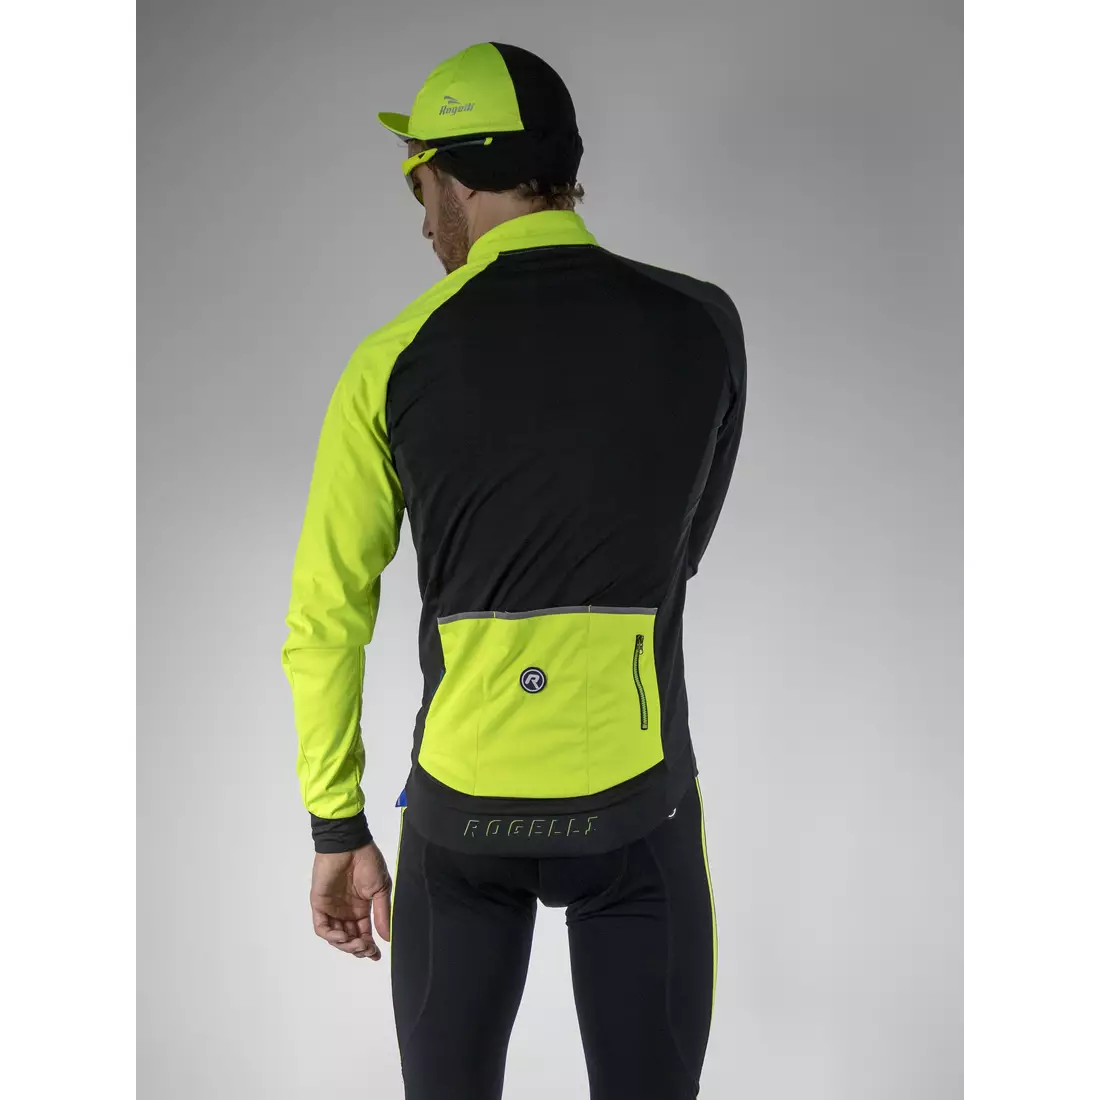 ROGELLI CONTENTO lehká zimní cyklistická bunda, softshellová, fluor žlutá